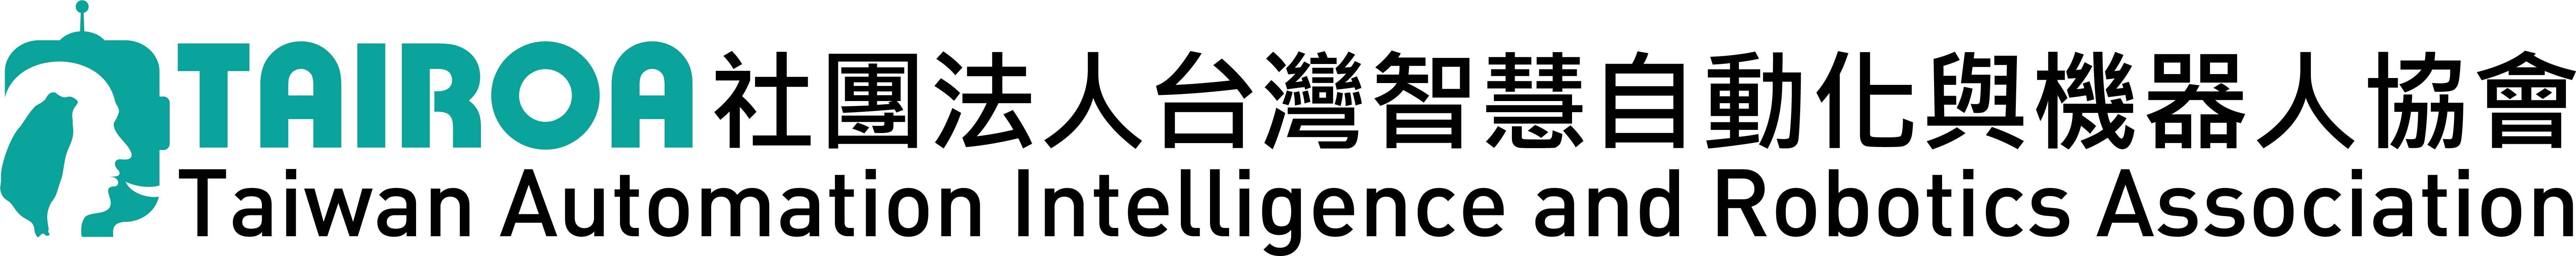 社團法人台灣智慧自動化與機器人協會 